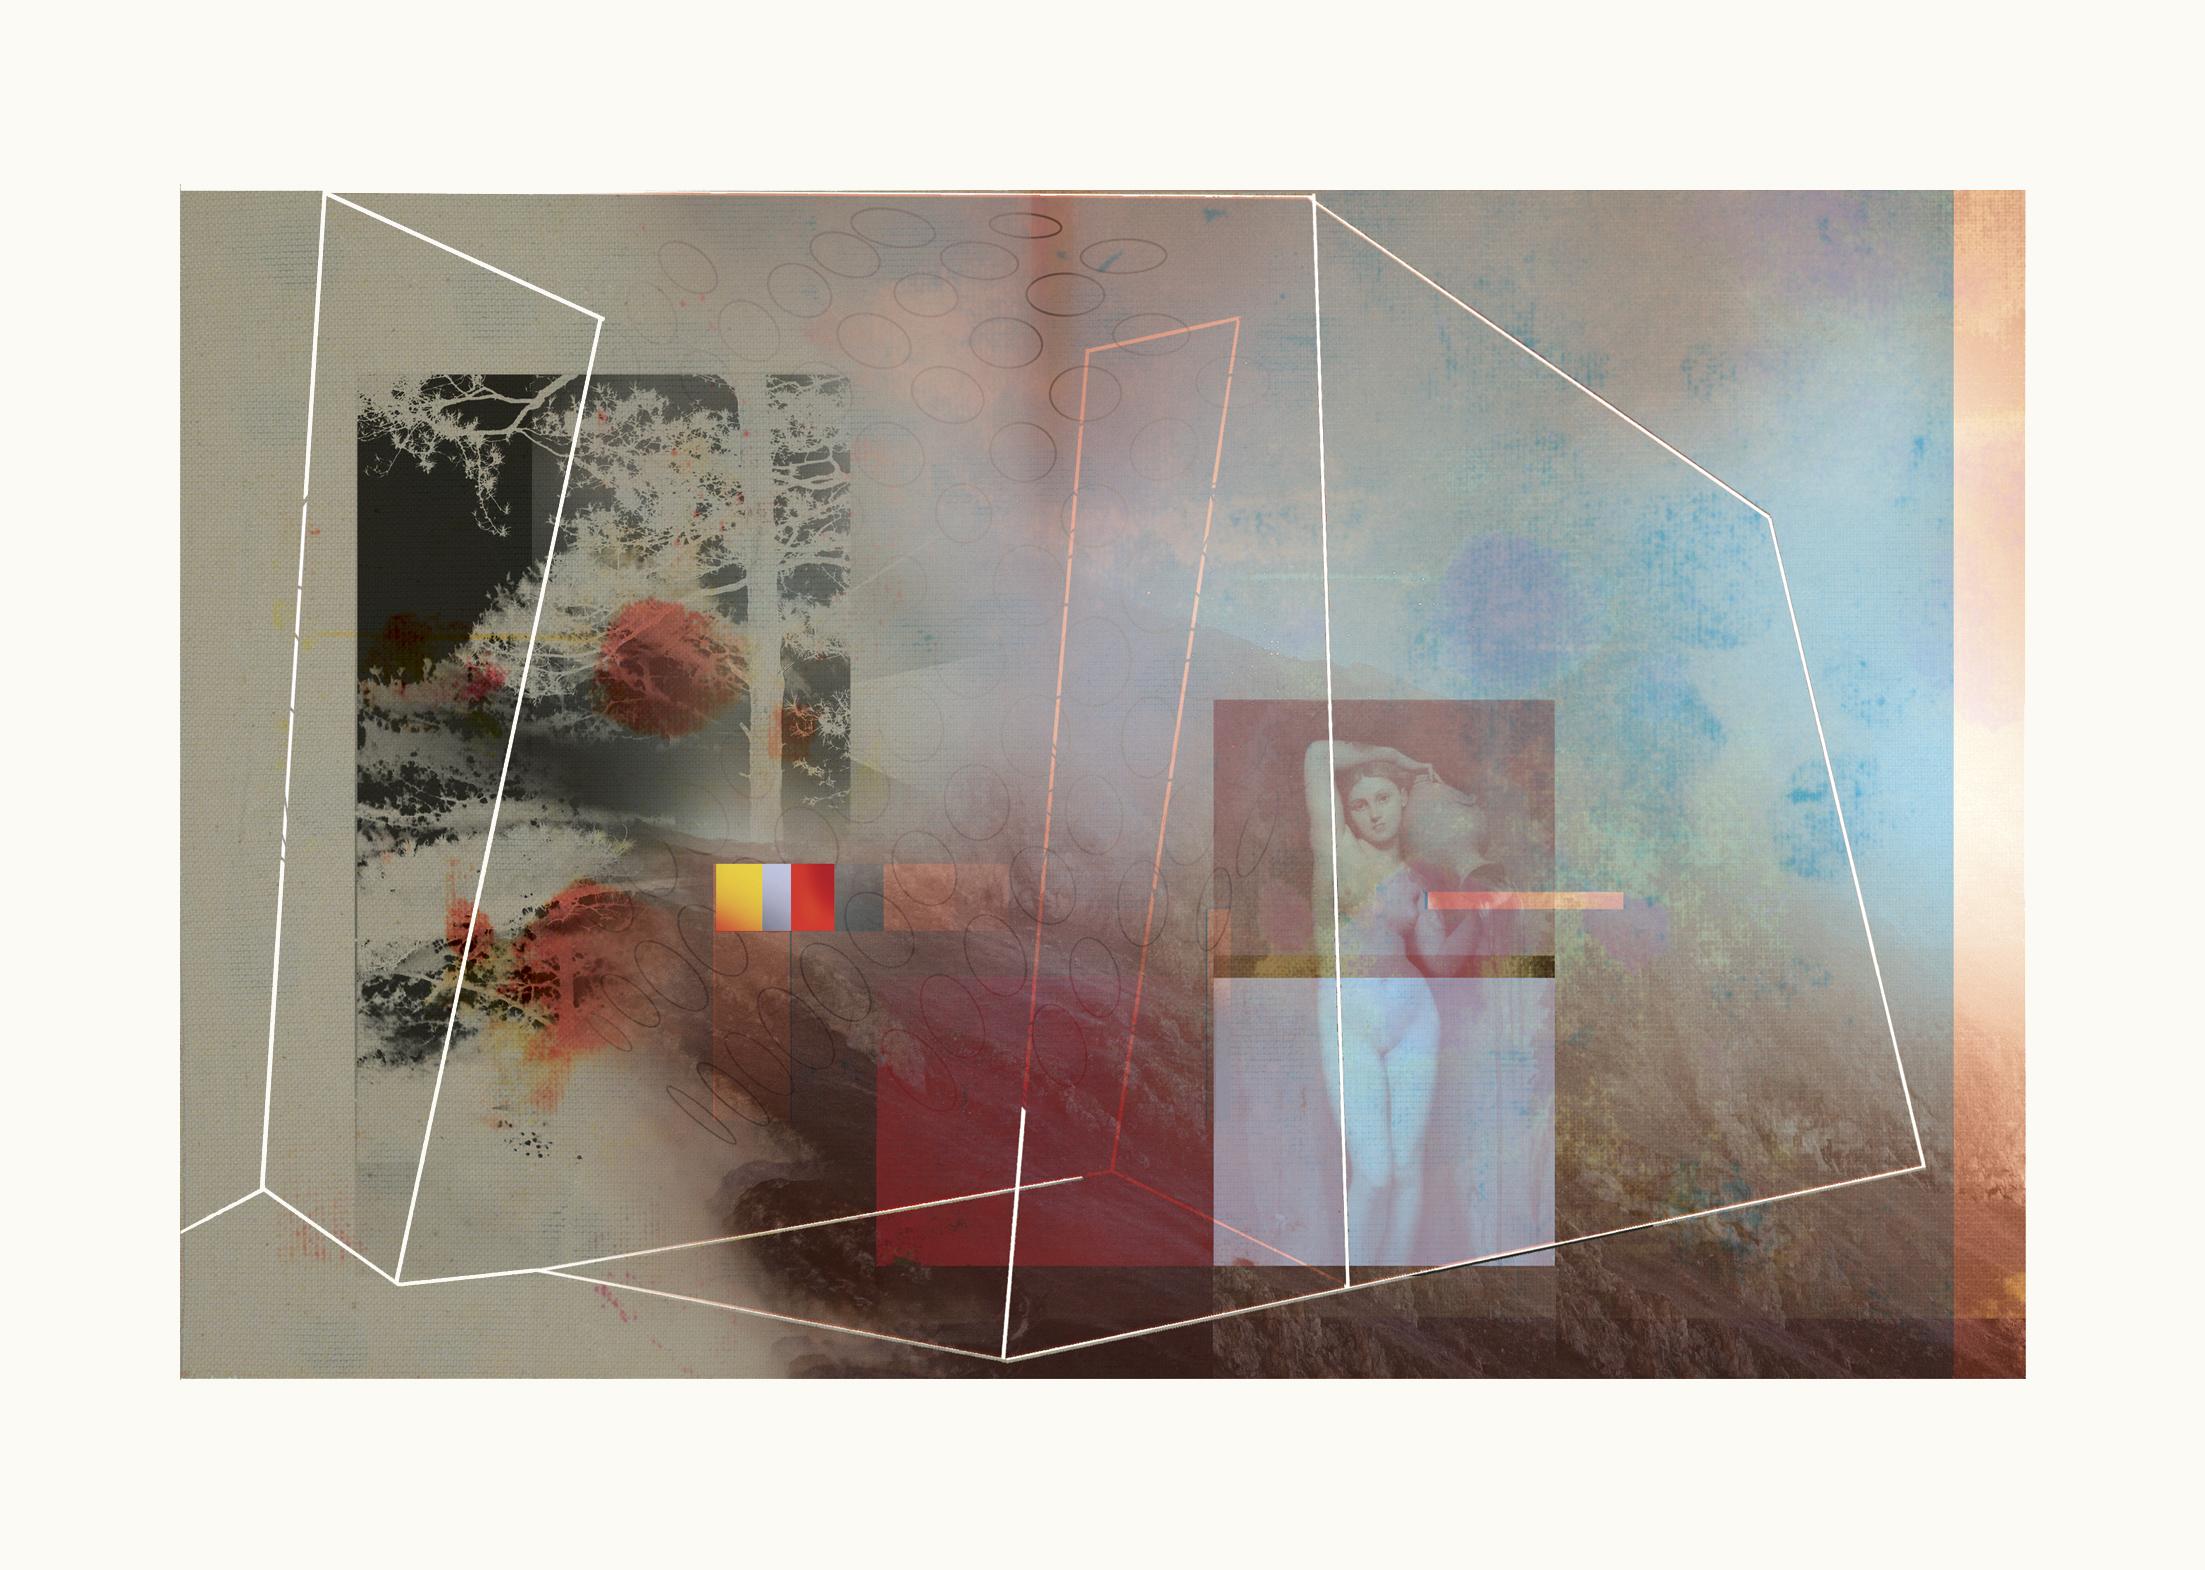 Abstract Print Francisco Nicolás - Casa 3 - Contemporain, abstrait, Pop art, surréaliste, géométrique, paysage 